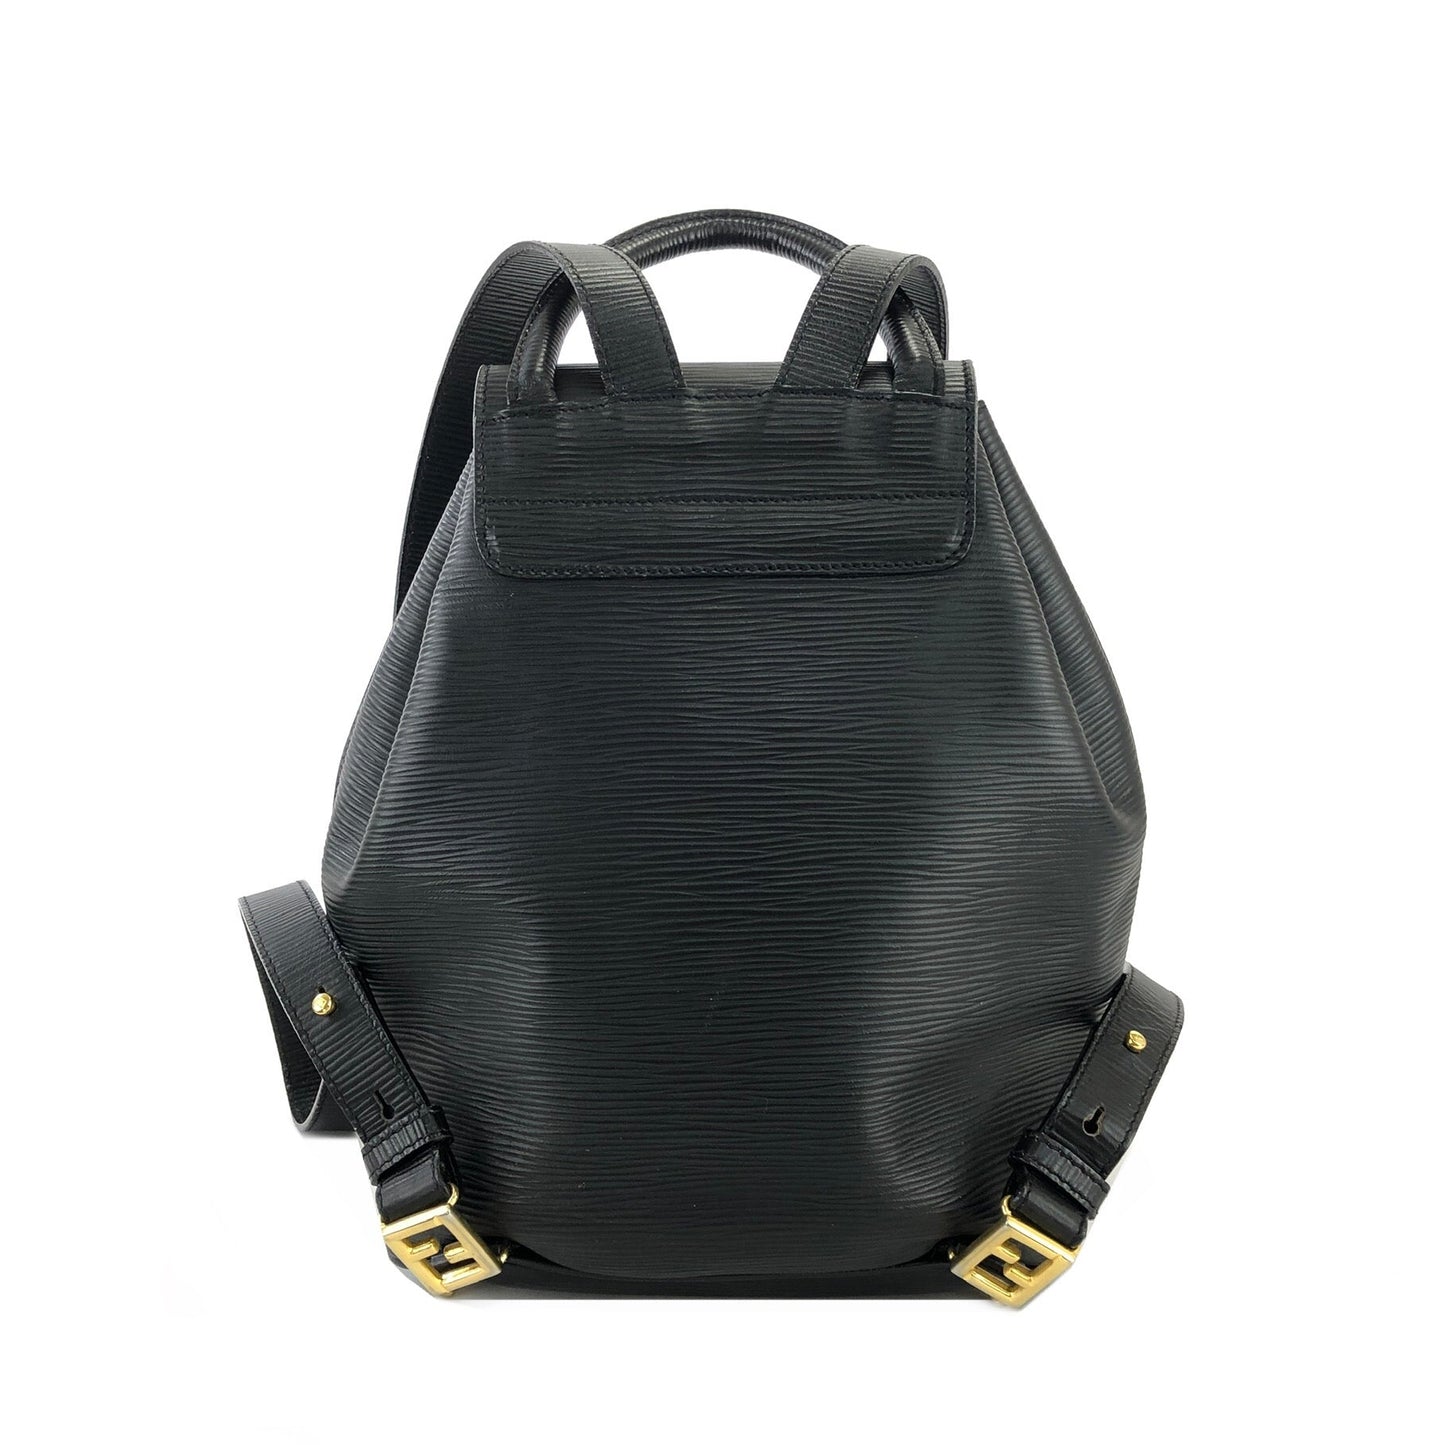 FENDI FF logo Embossed leather Drawstring Backpack Black Vintage Old 82m65h